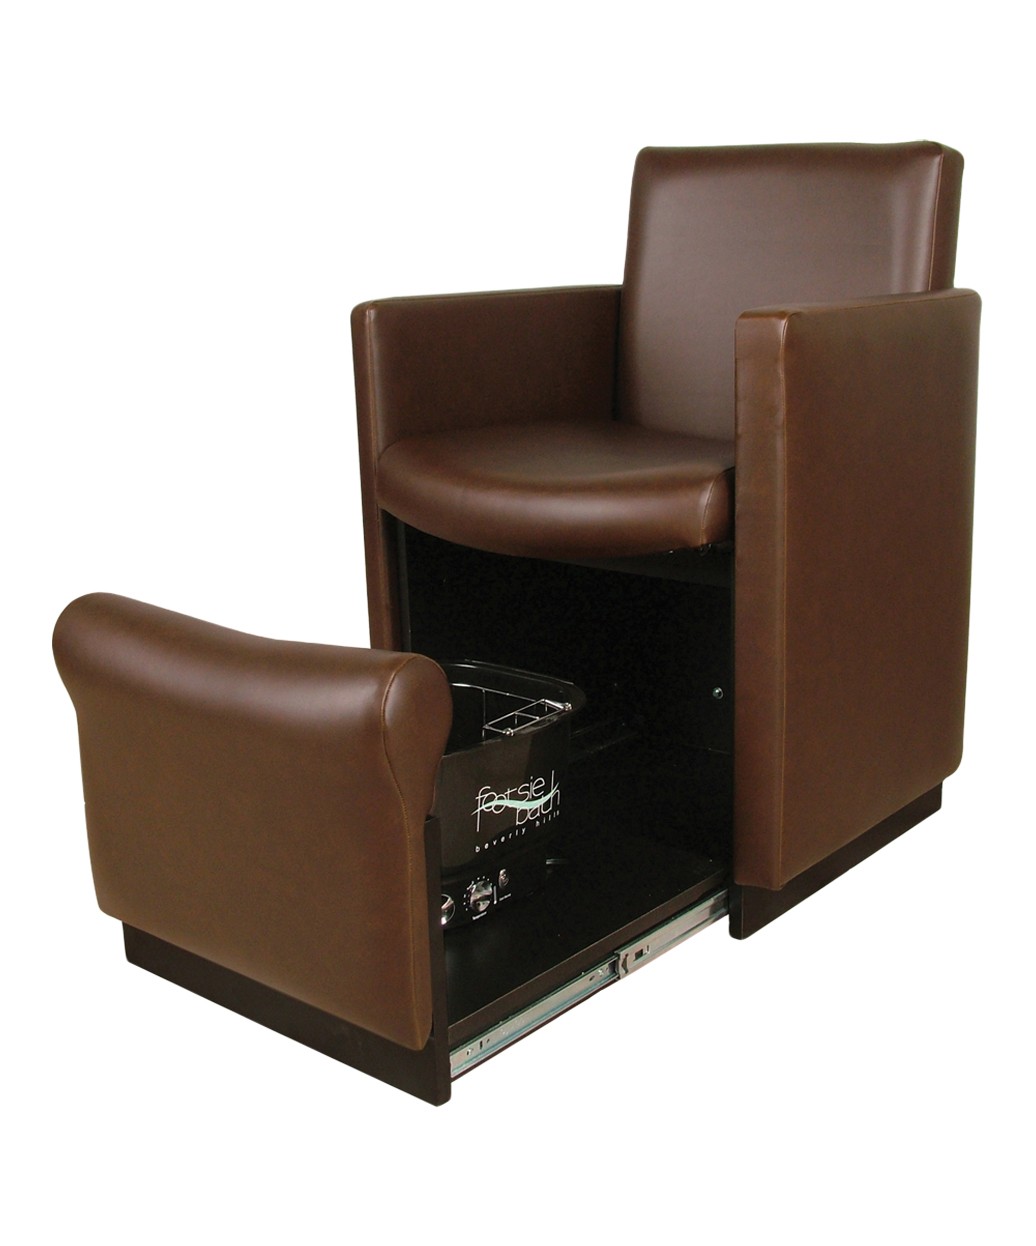 Collins 2550 Cigno Club Pedicure Chair w/ Footsie Bath